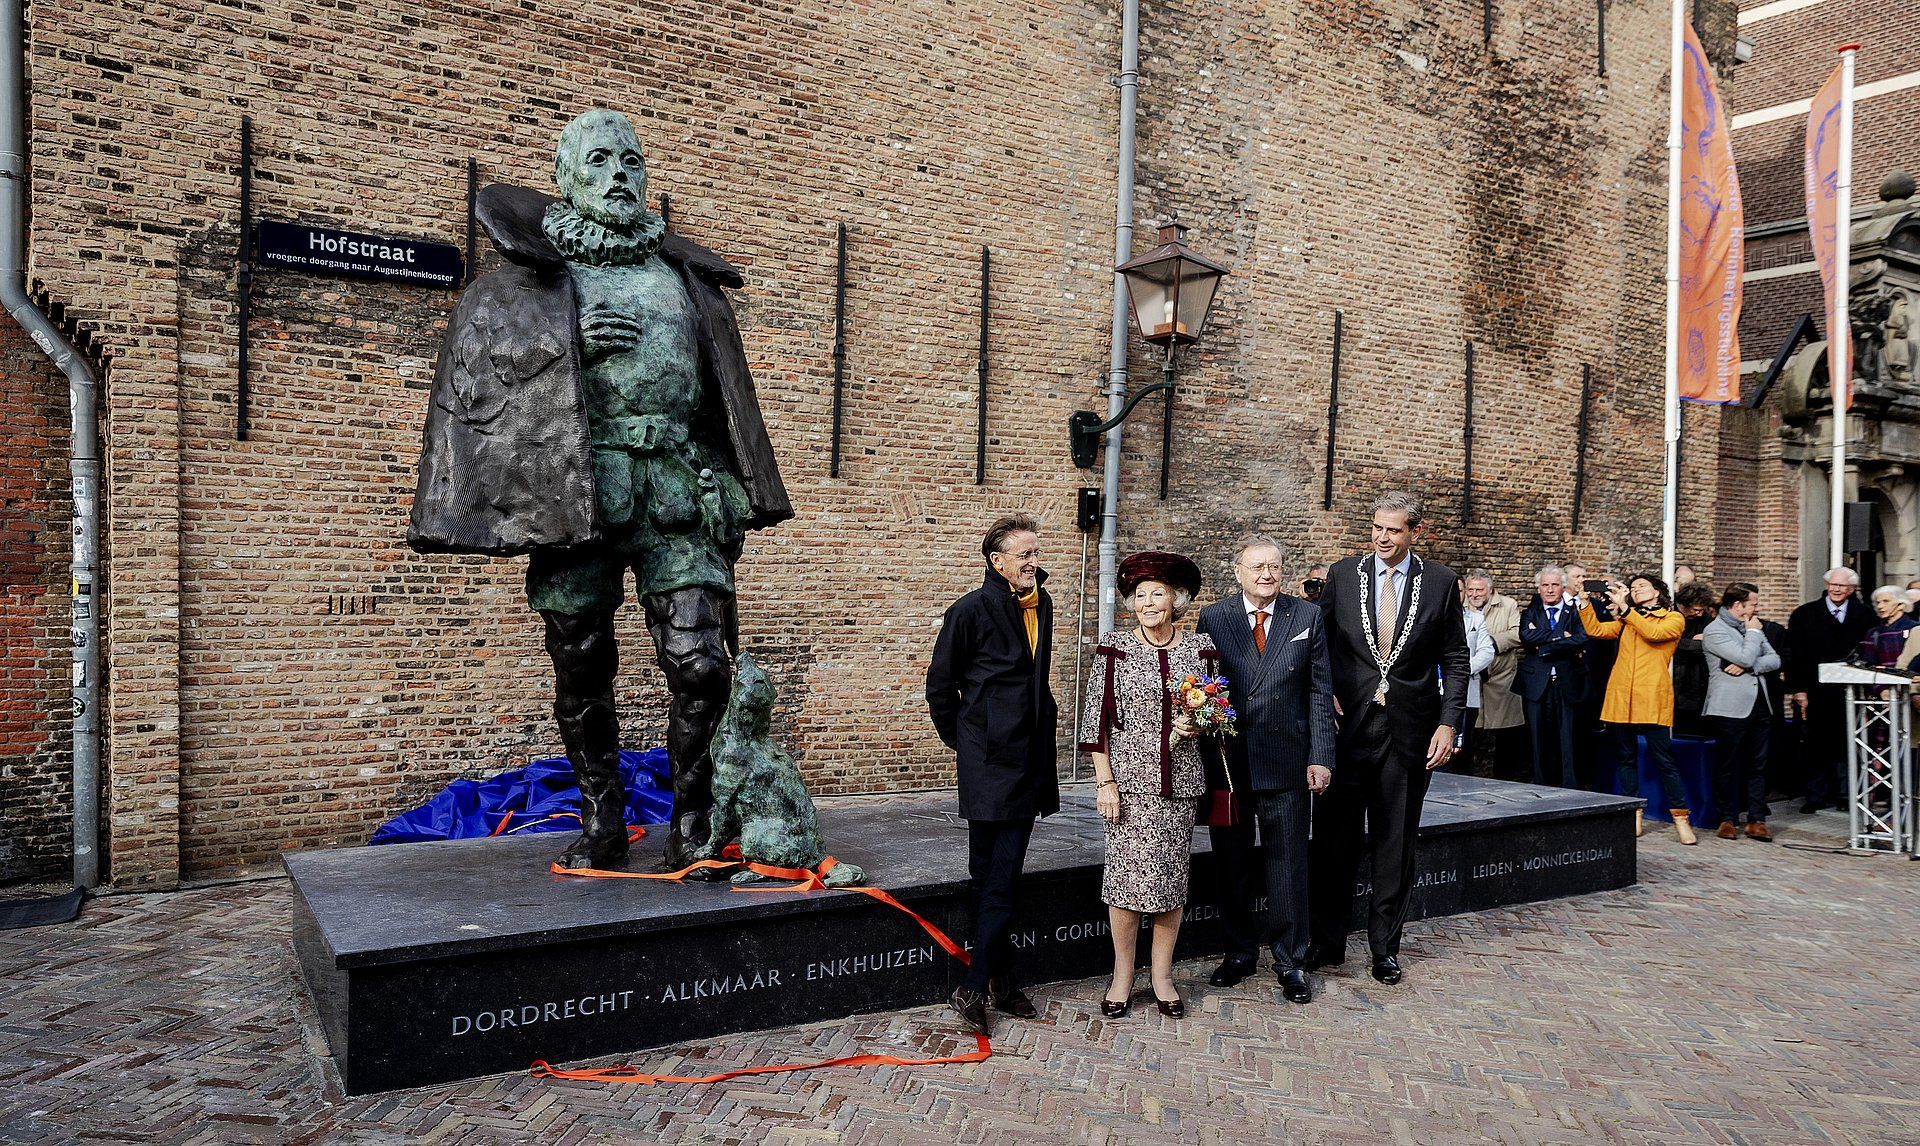 Het standbeeld werd geschonken aan de stad Dordrecht door de Prins Willem de Eerste